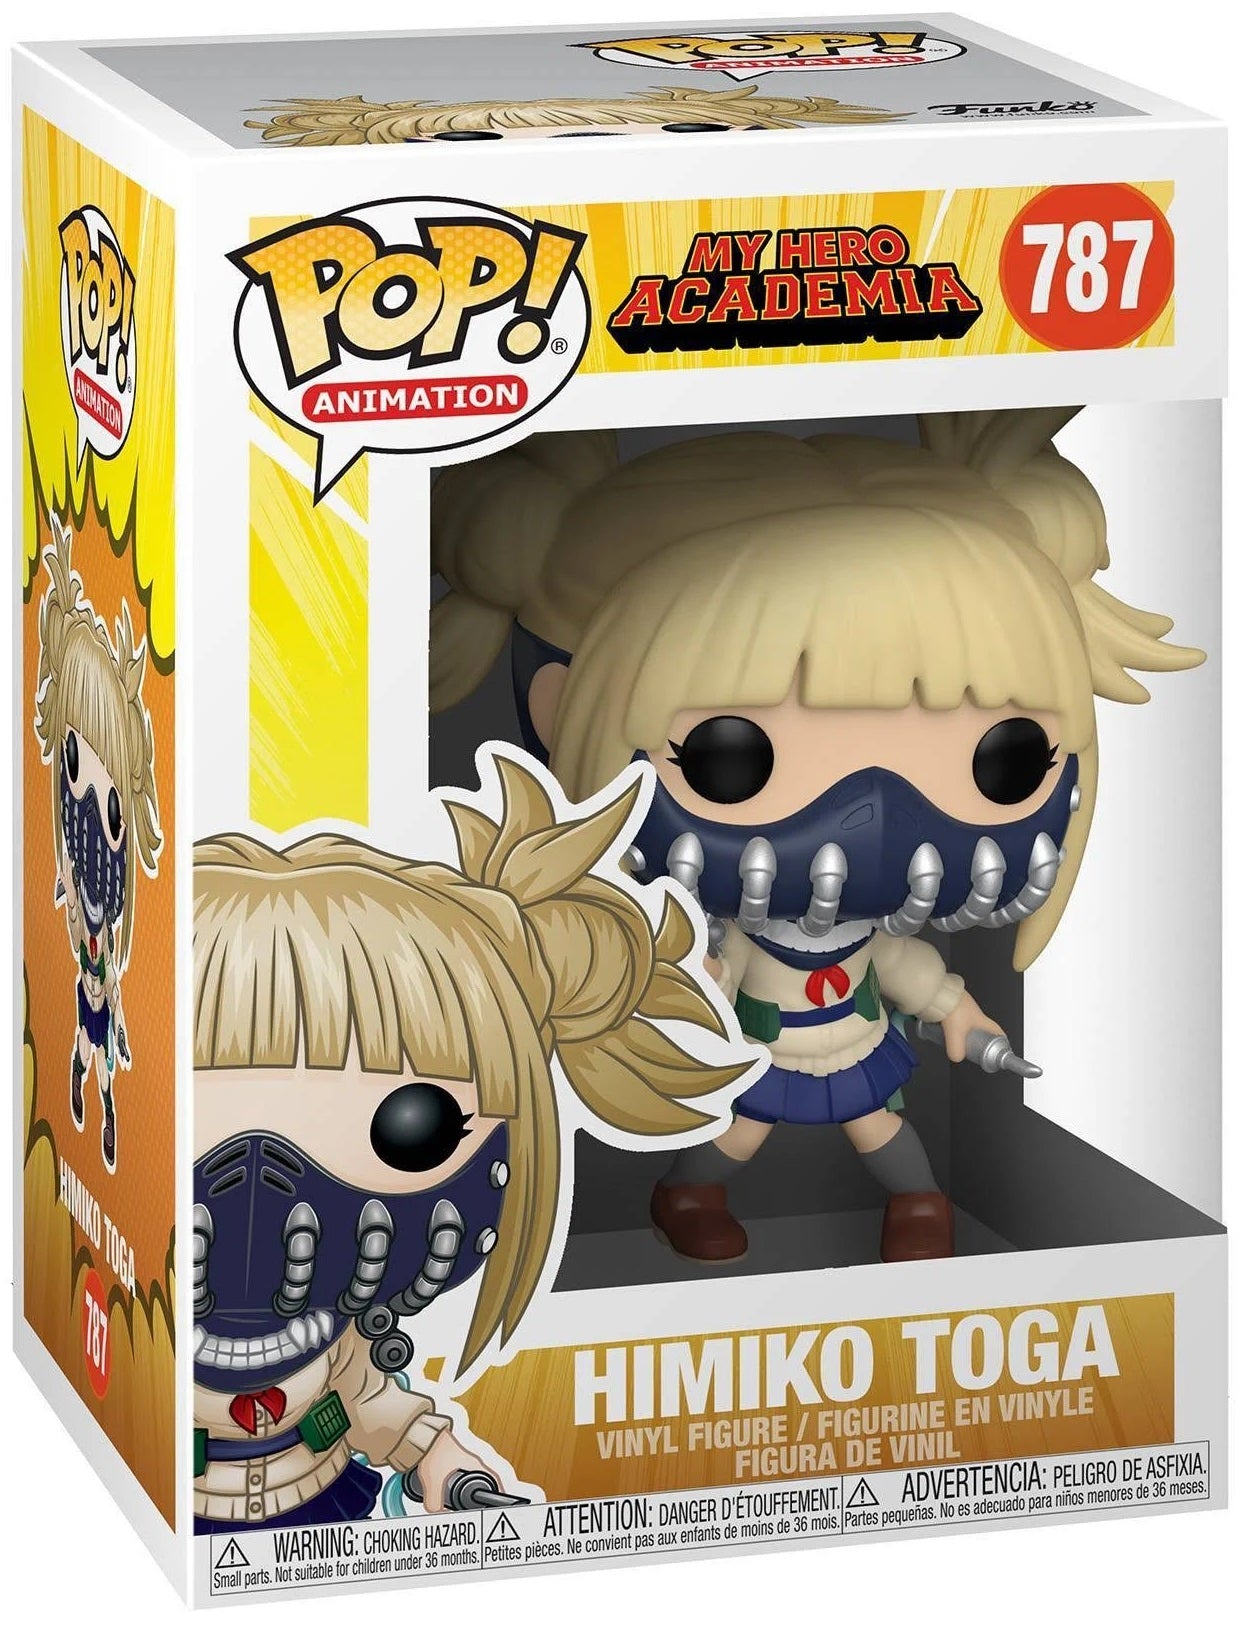 Himiko Toga POP! (My Hero Academia) 787